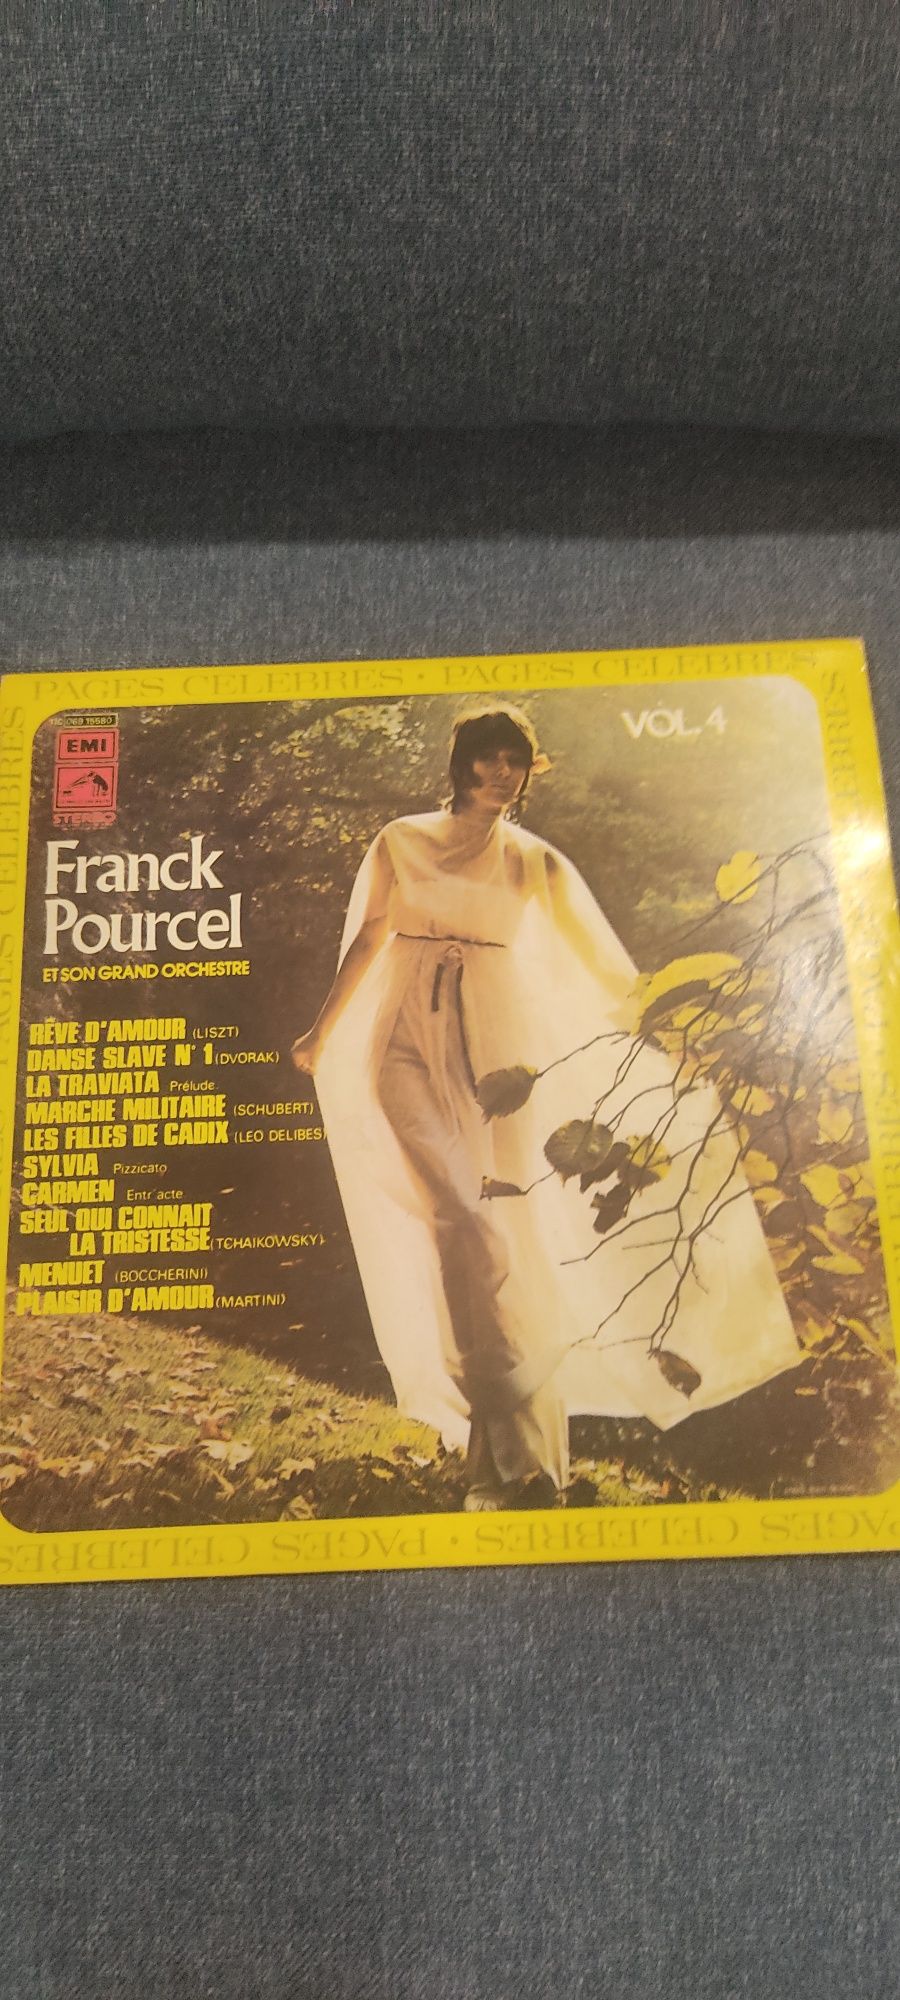 Vinil vinyl disco Frank Pourcel et son Grand Orchestre vol 4 Pages Cél